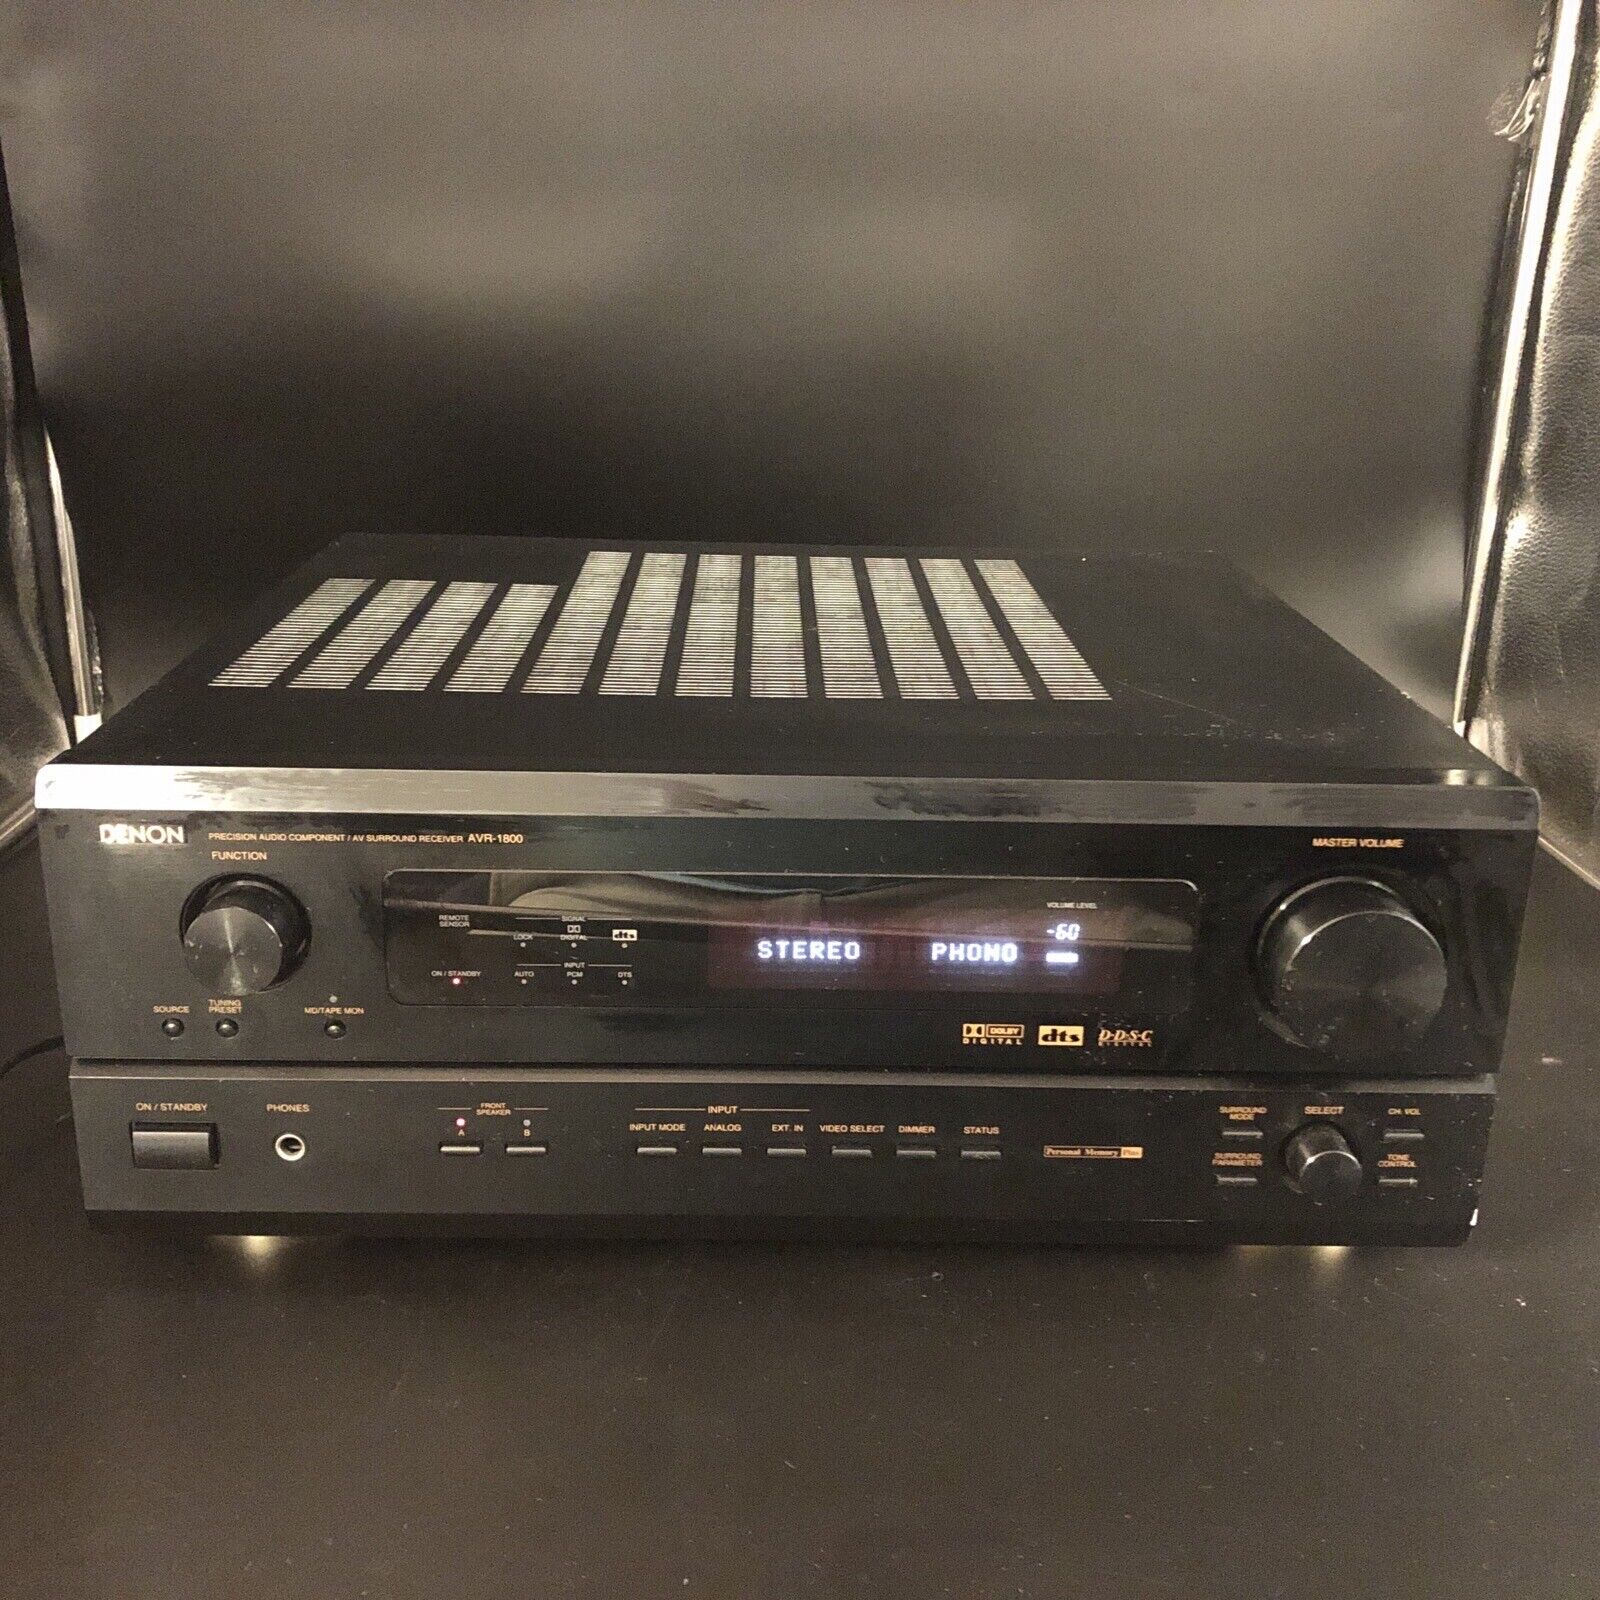 Opblazen Leeuw verkrachting Denon AVR-1800 Receiver HiFi Stereo Audiophile Japan AV 5.1 Channel Dolby  AM FM | eBay